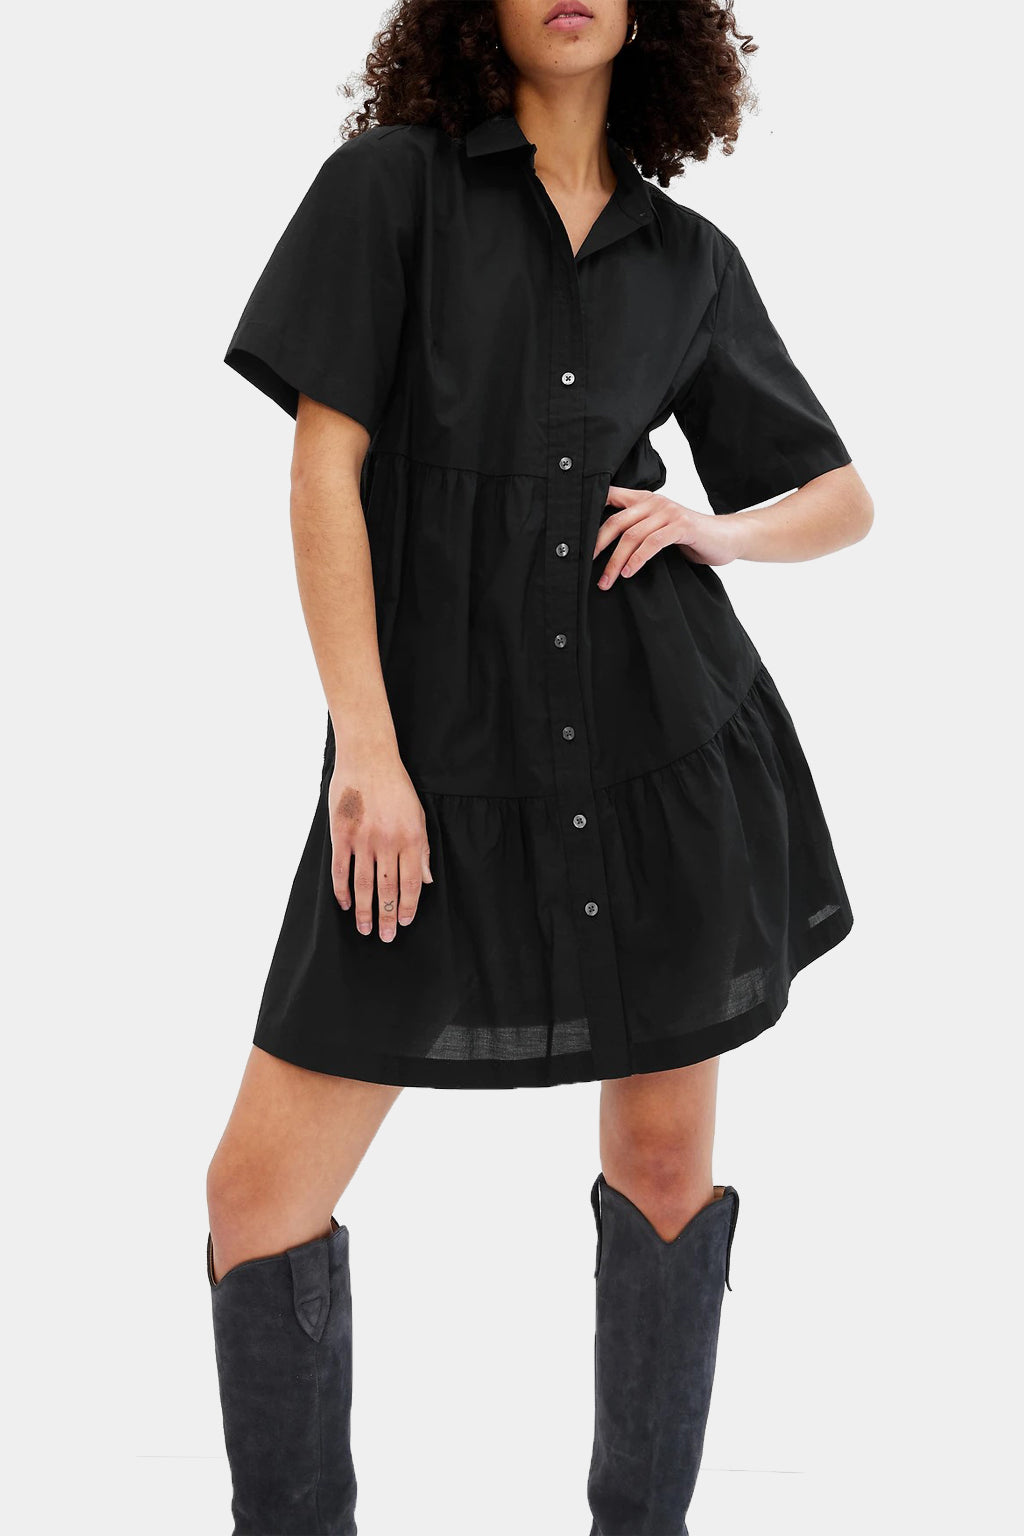 Gap - Tiered Mini Shirt Dress